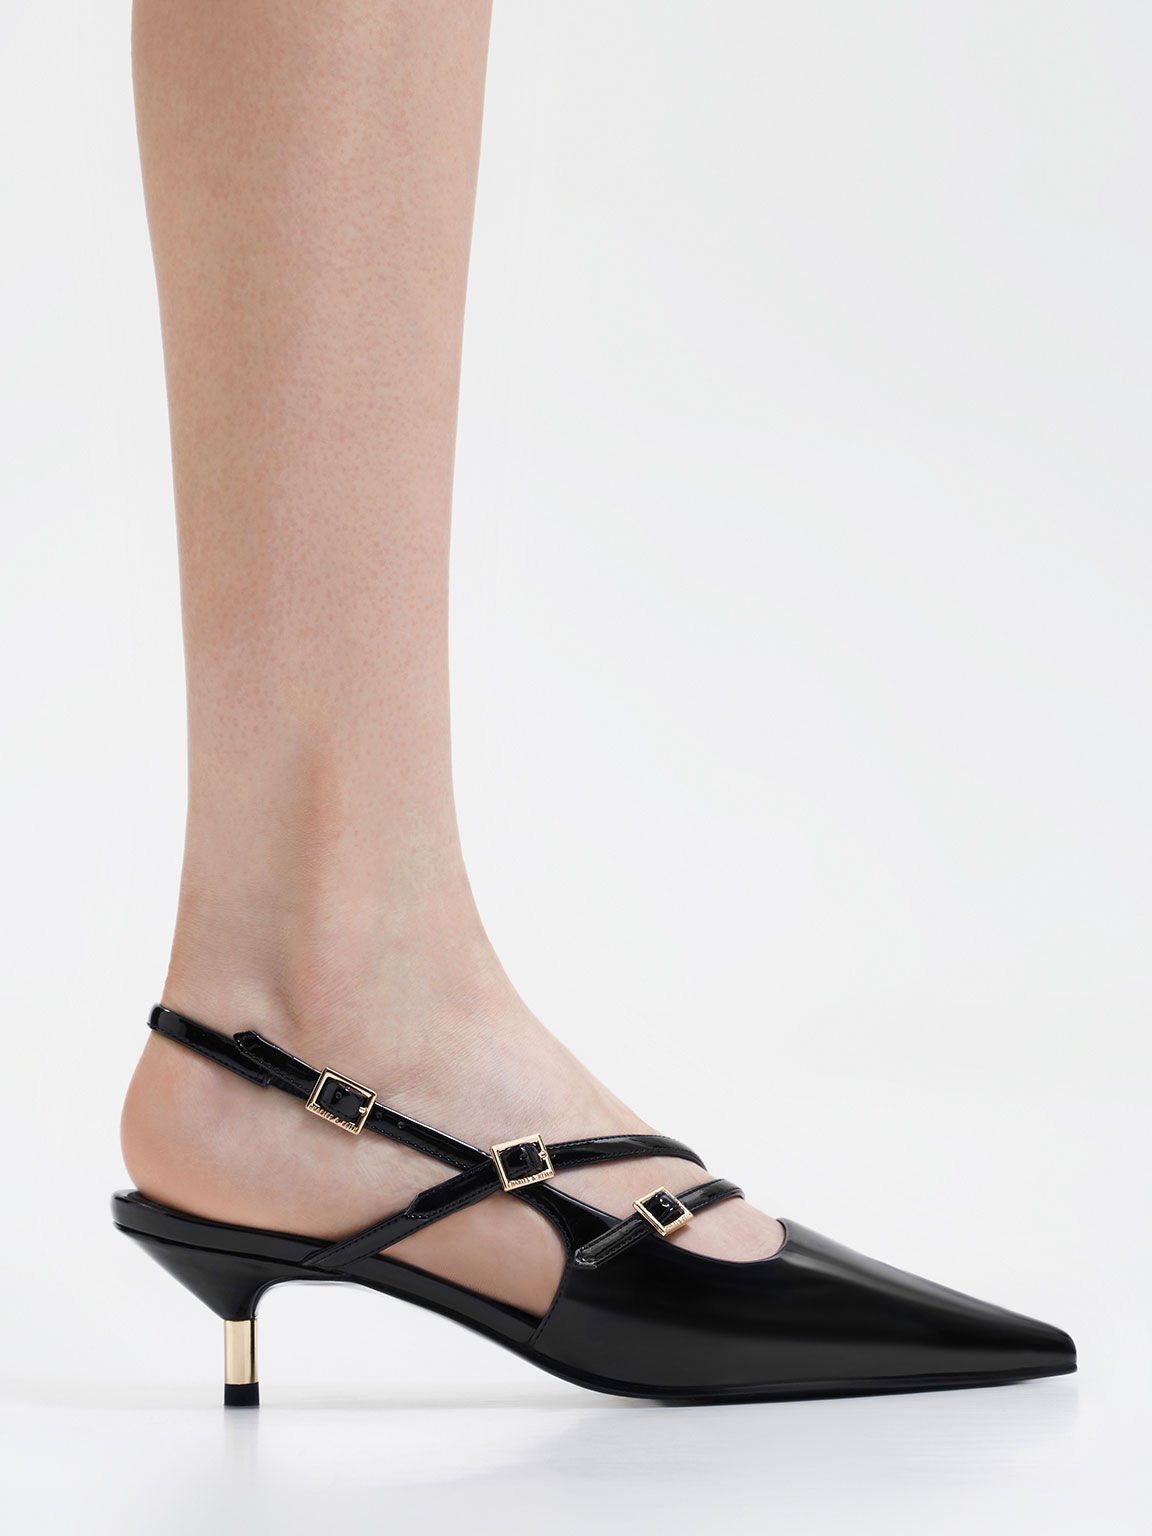 Zapatos destalonados de charol con tacón bajo y hebilla, Charol negro, hi-res